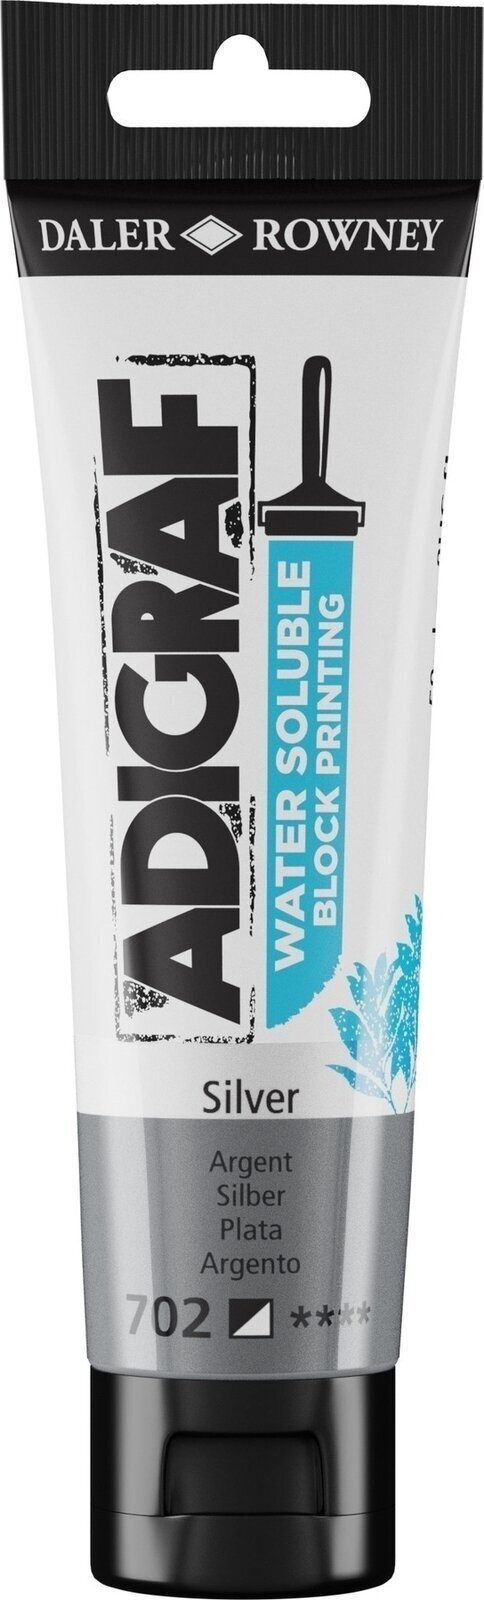 Boja za linorez Daler Rowney Adigraf Block Printing Water Soluble Colour Boja za linorez Silver 59 ml